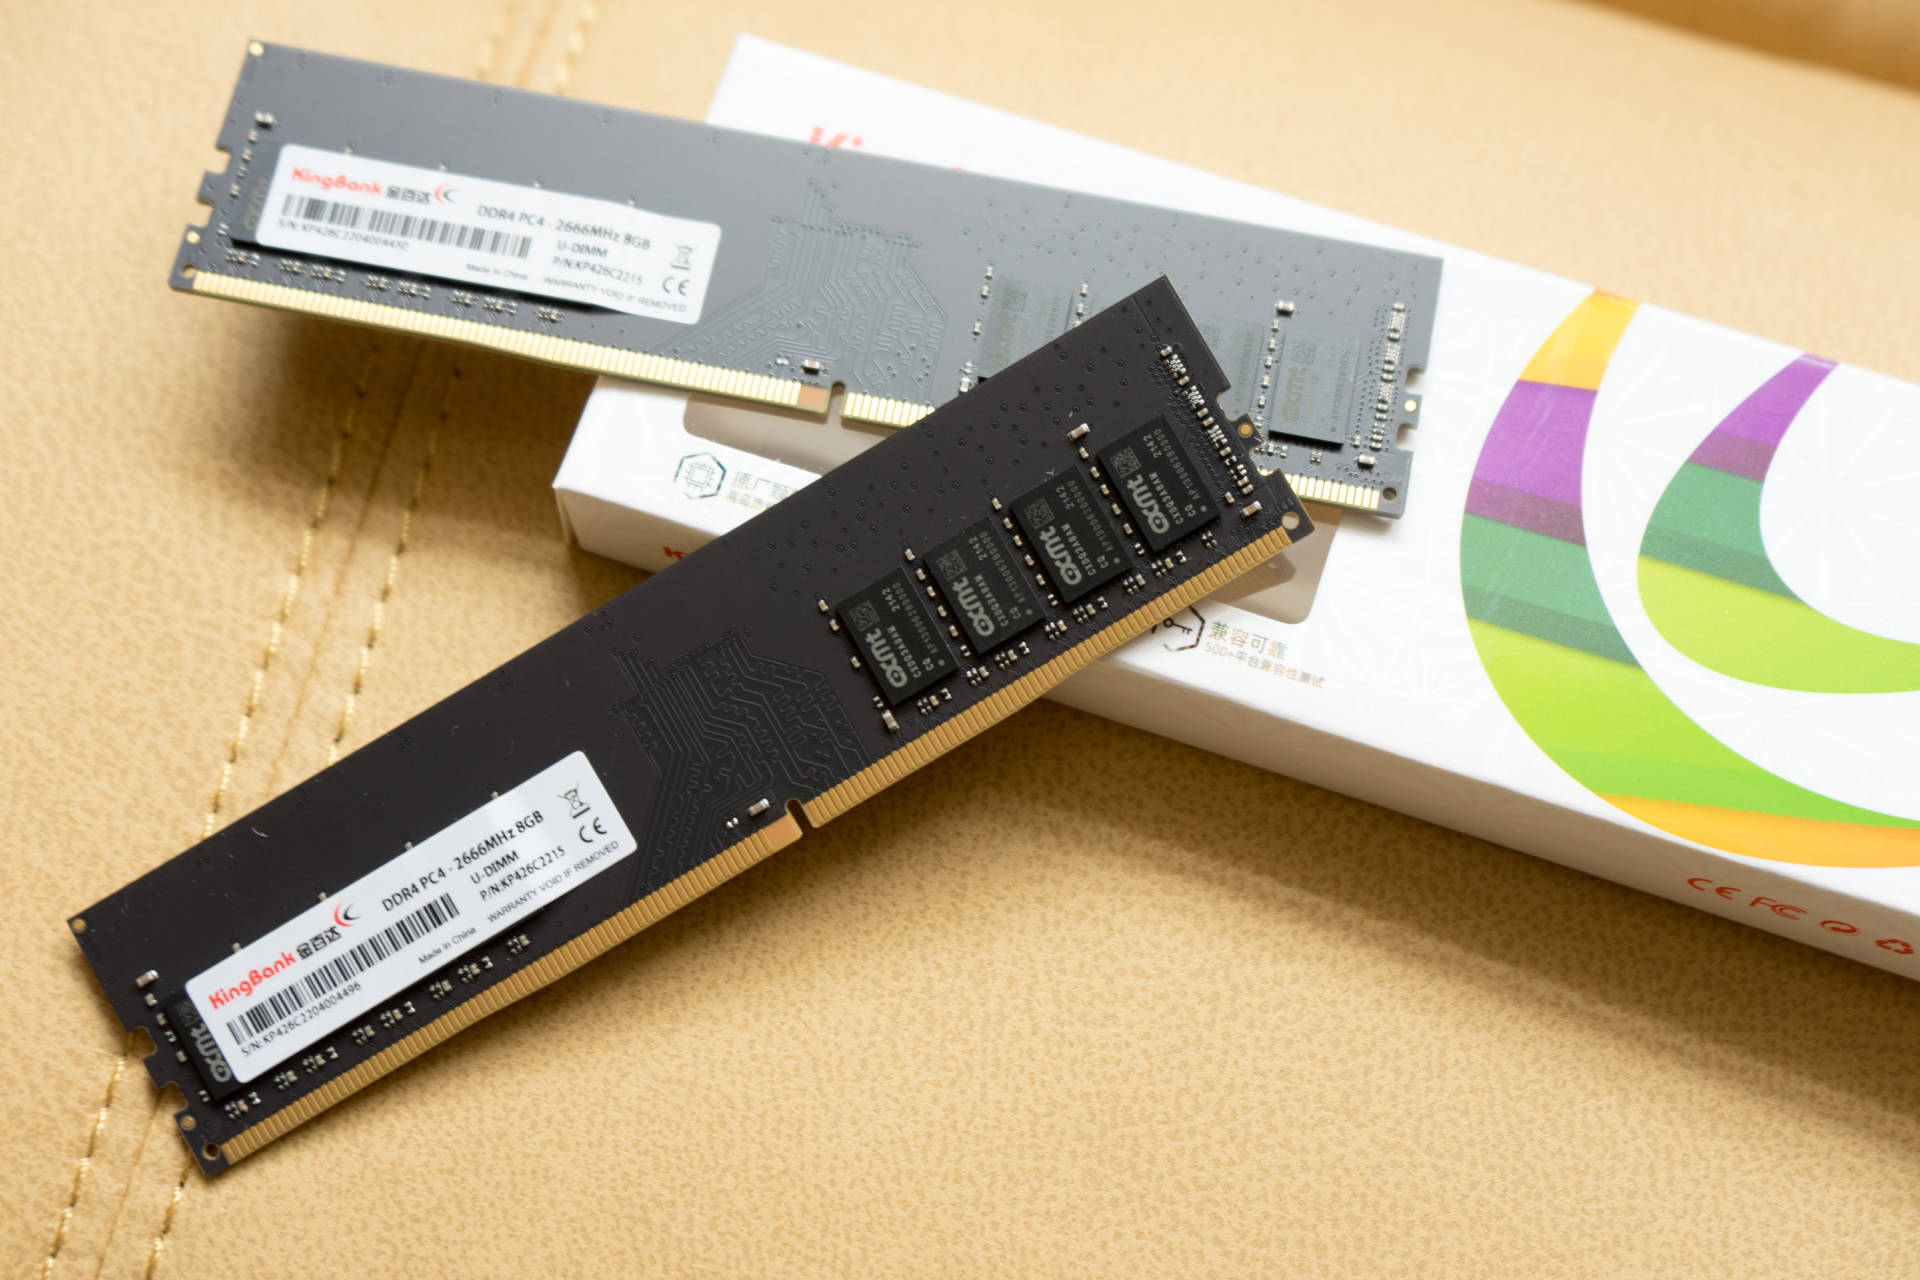 将 U820 笔记本改装黑苹果并添加 DDR4 内存，是爱还是折磨？  第2张